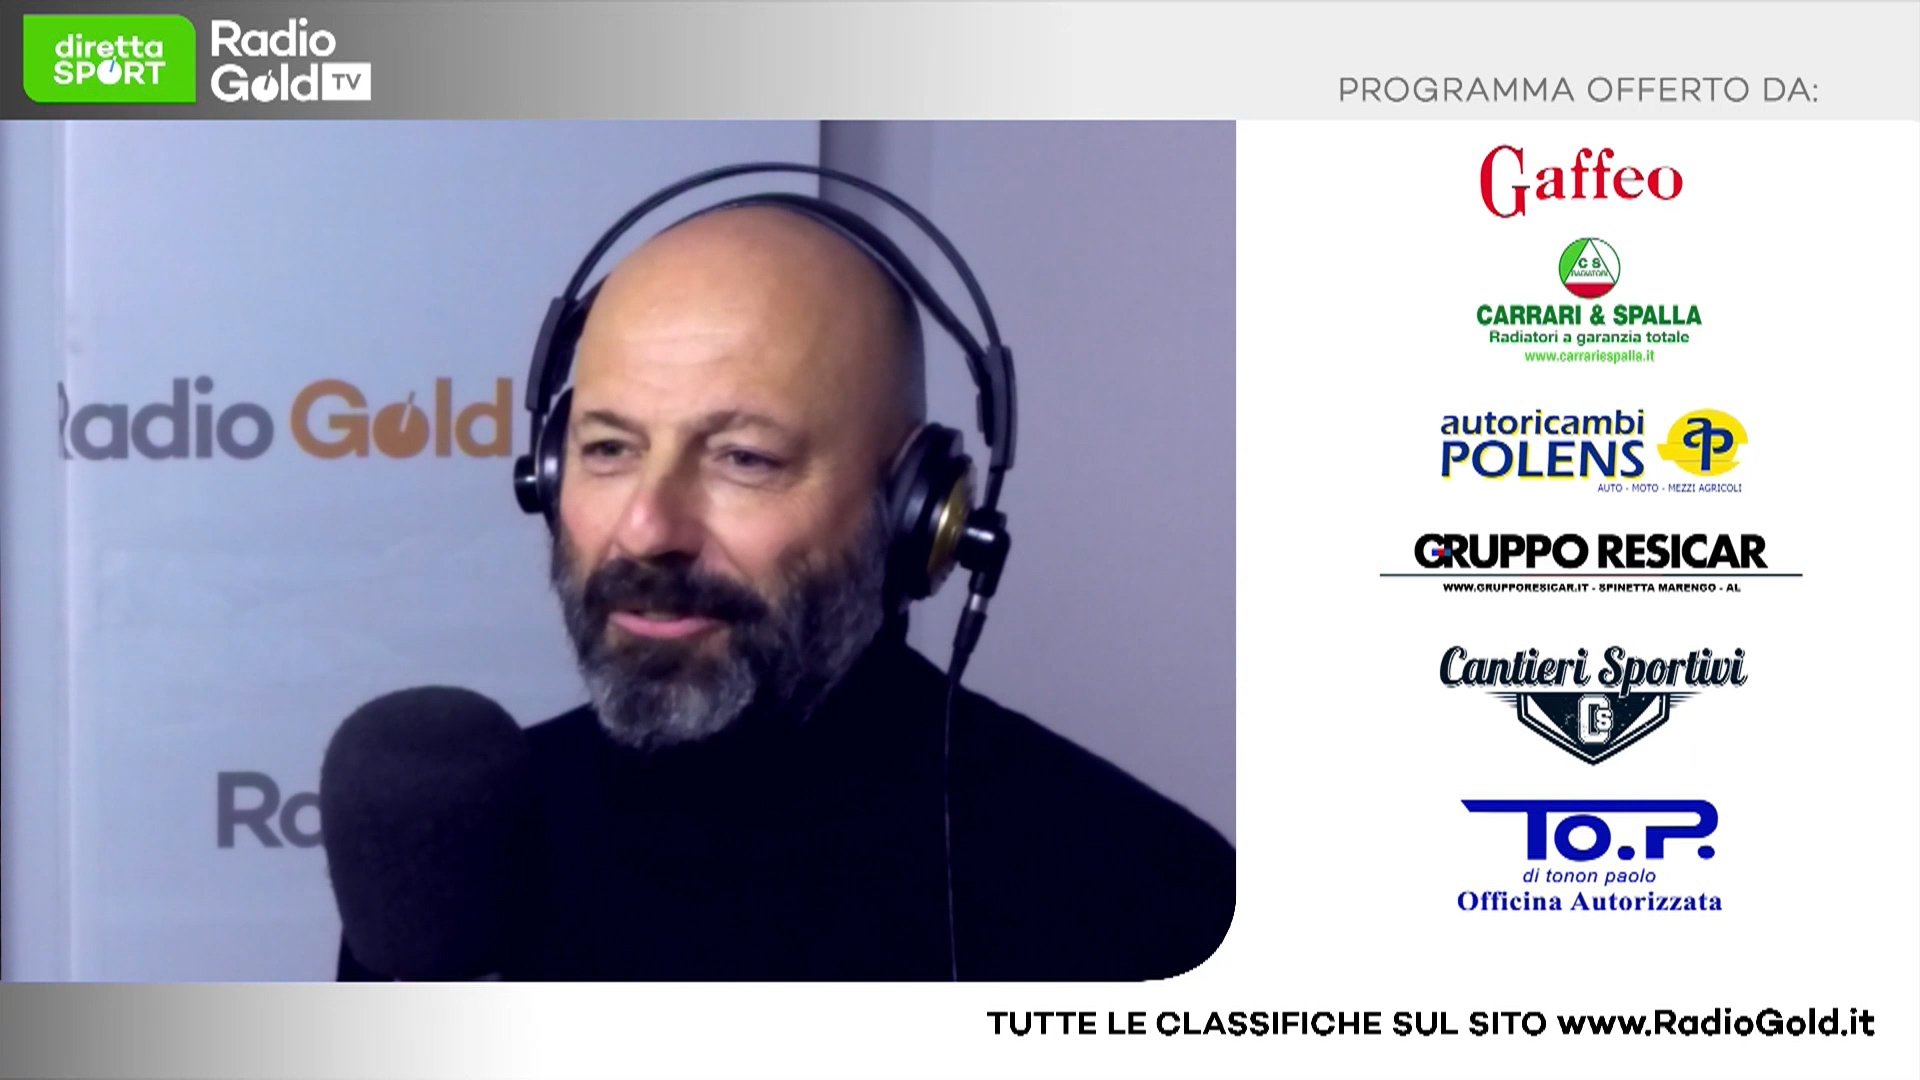 Serie D e Eccellenza: su Radio Gold Tv mister Fabio Nobili